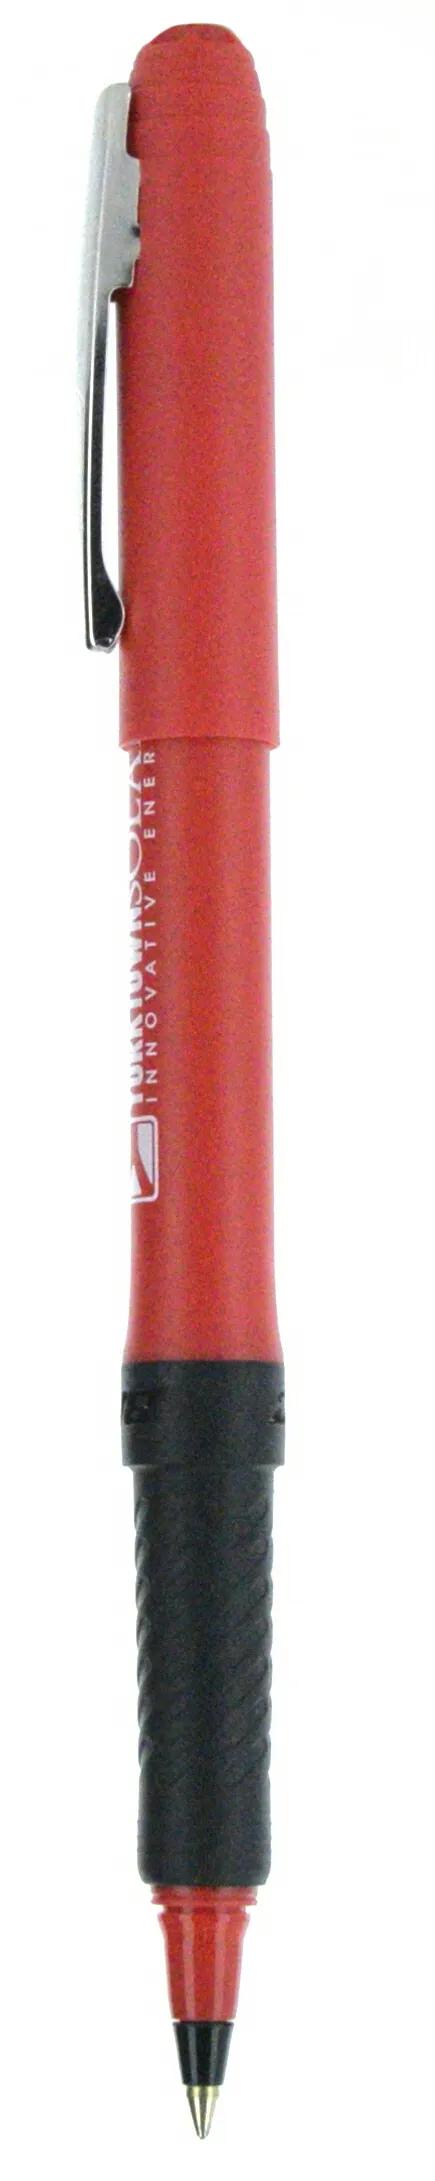 BIC® Grip Roller Pen 143 of 147